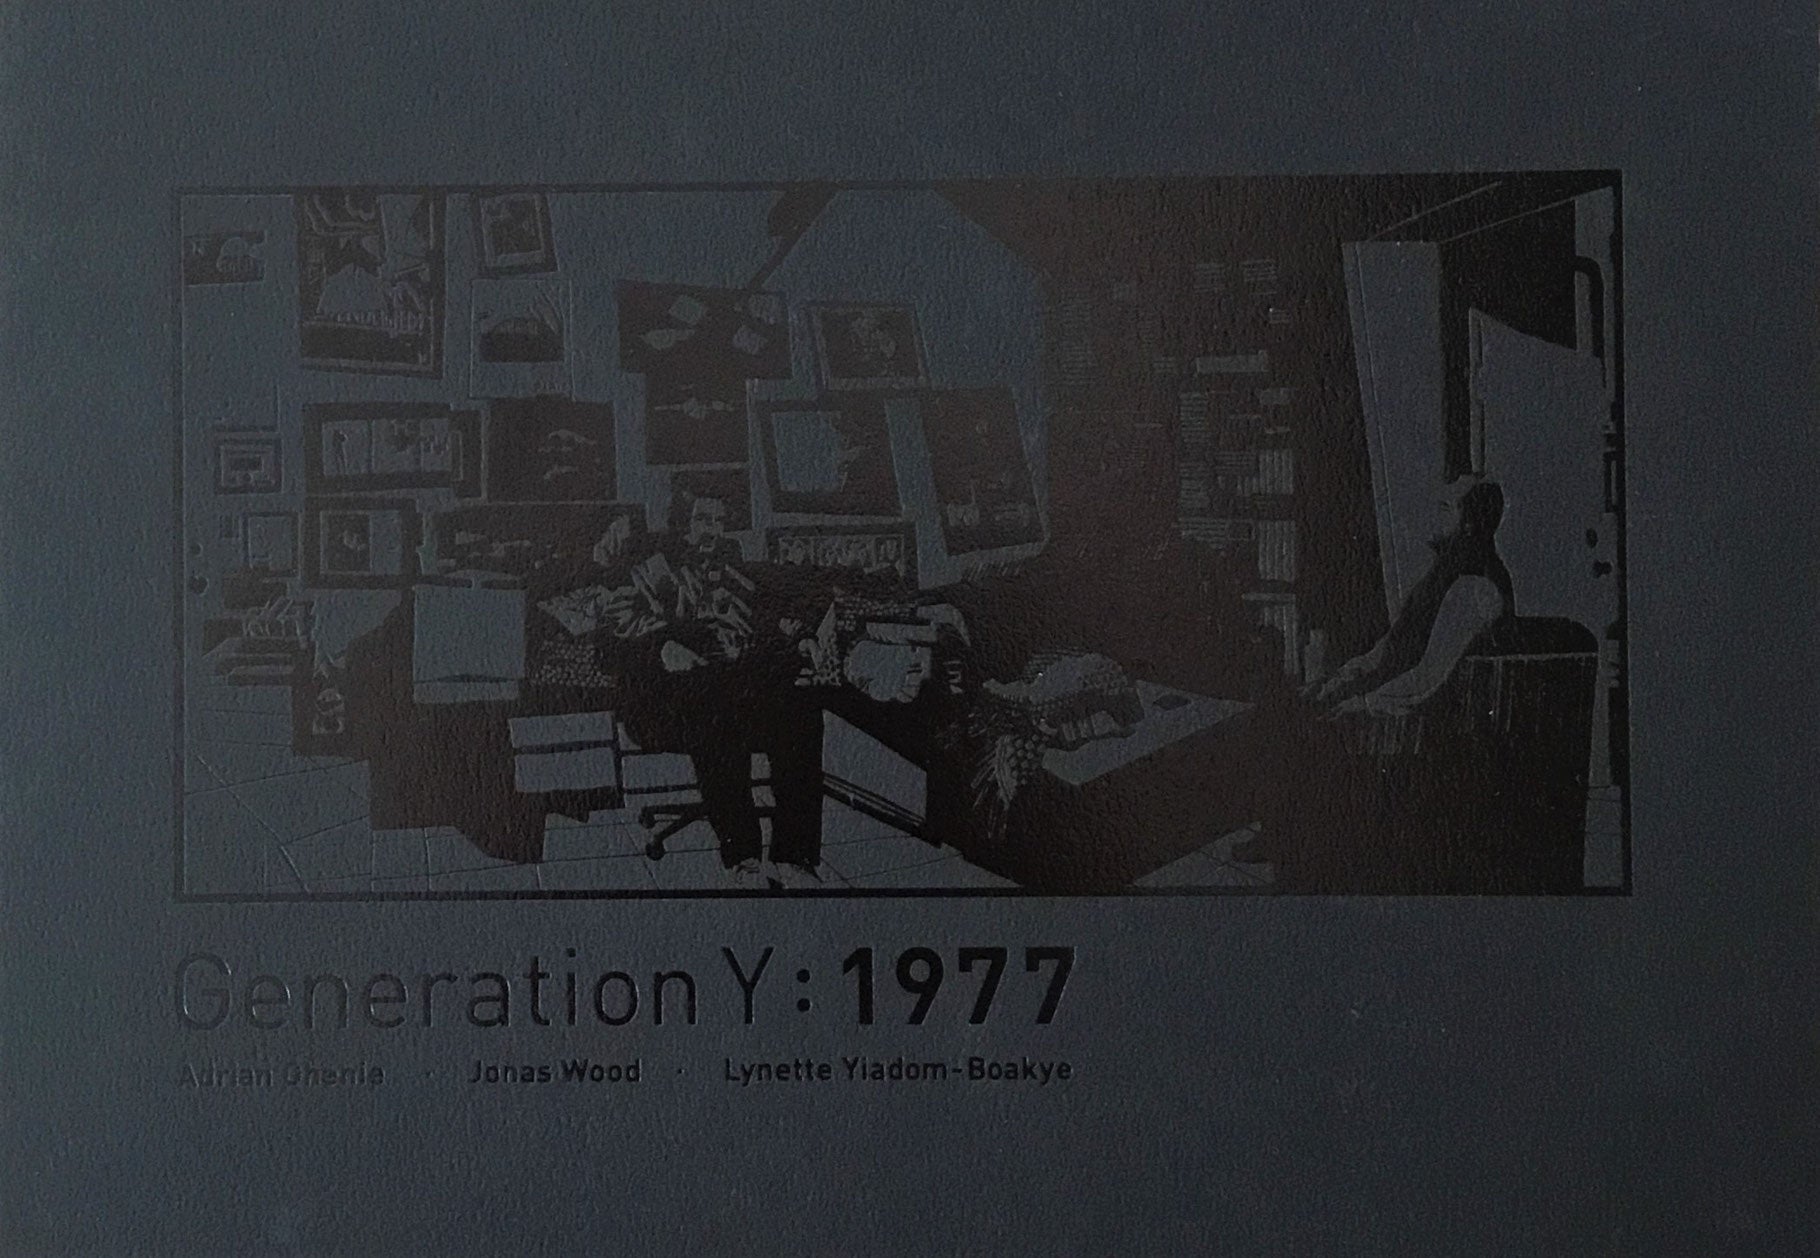 Generation Y:1977　Adrian Ghenie　Jonas Wood　Lynette Yiadom-Boakye